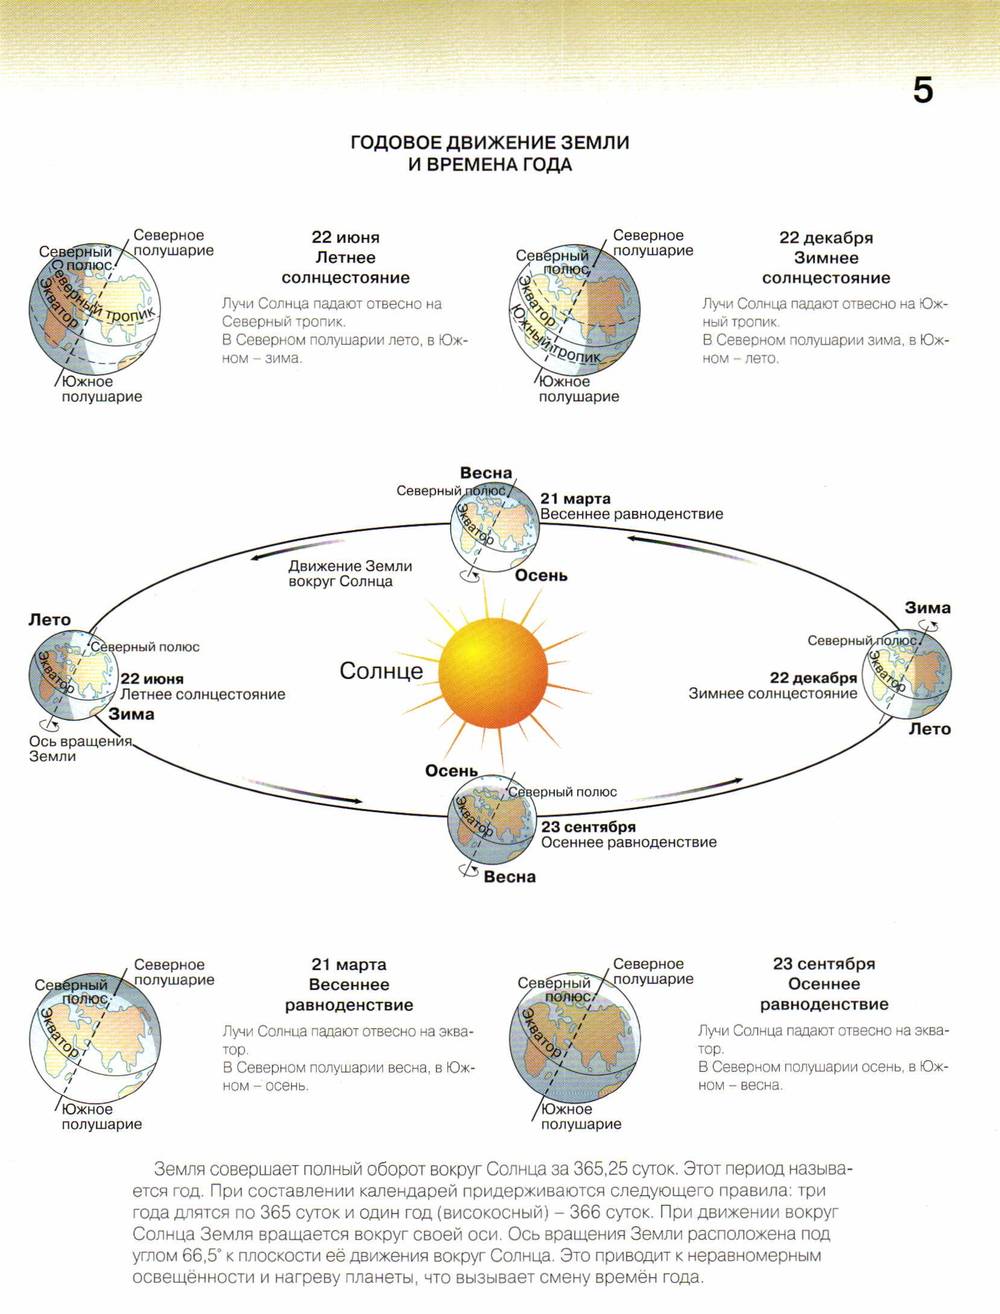 Направление солнечного света. Схема движения земли вокруг солнца. Вращение земли вокруг солнца с солнцестояниями. Положение земли в дни равноденствия и солнцестояния схема. Схема годового вращения земли вокруг солнца.